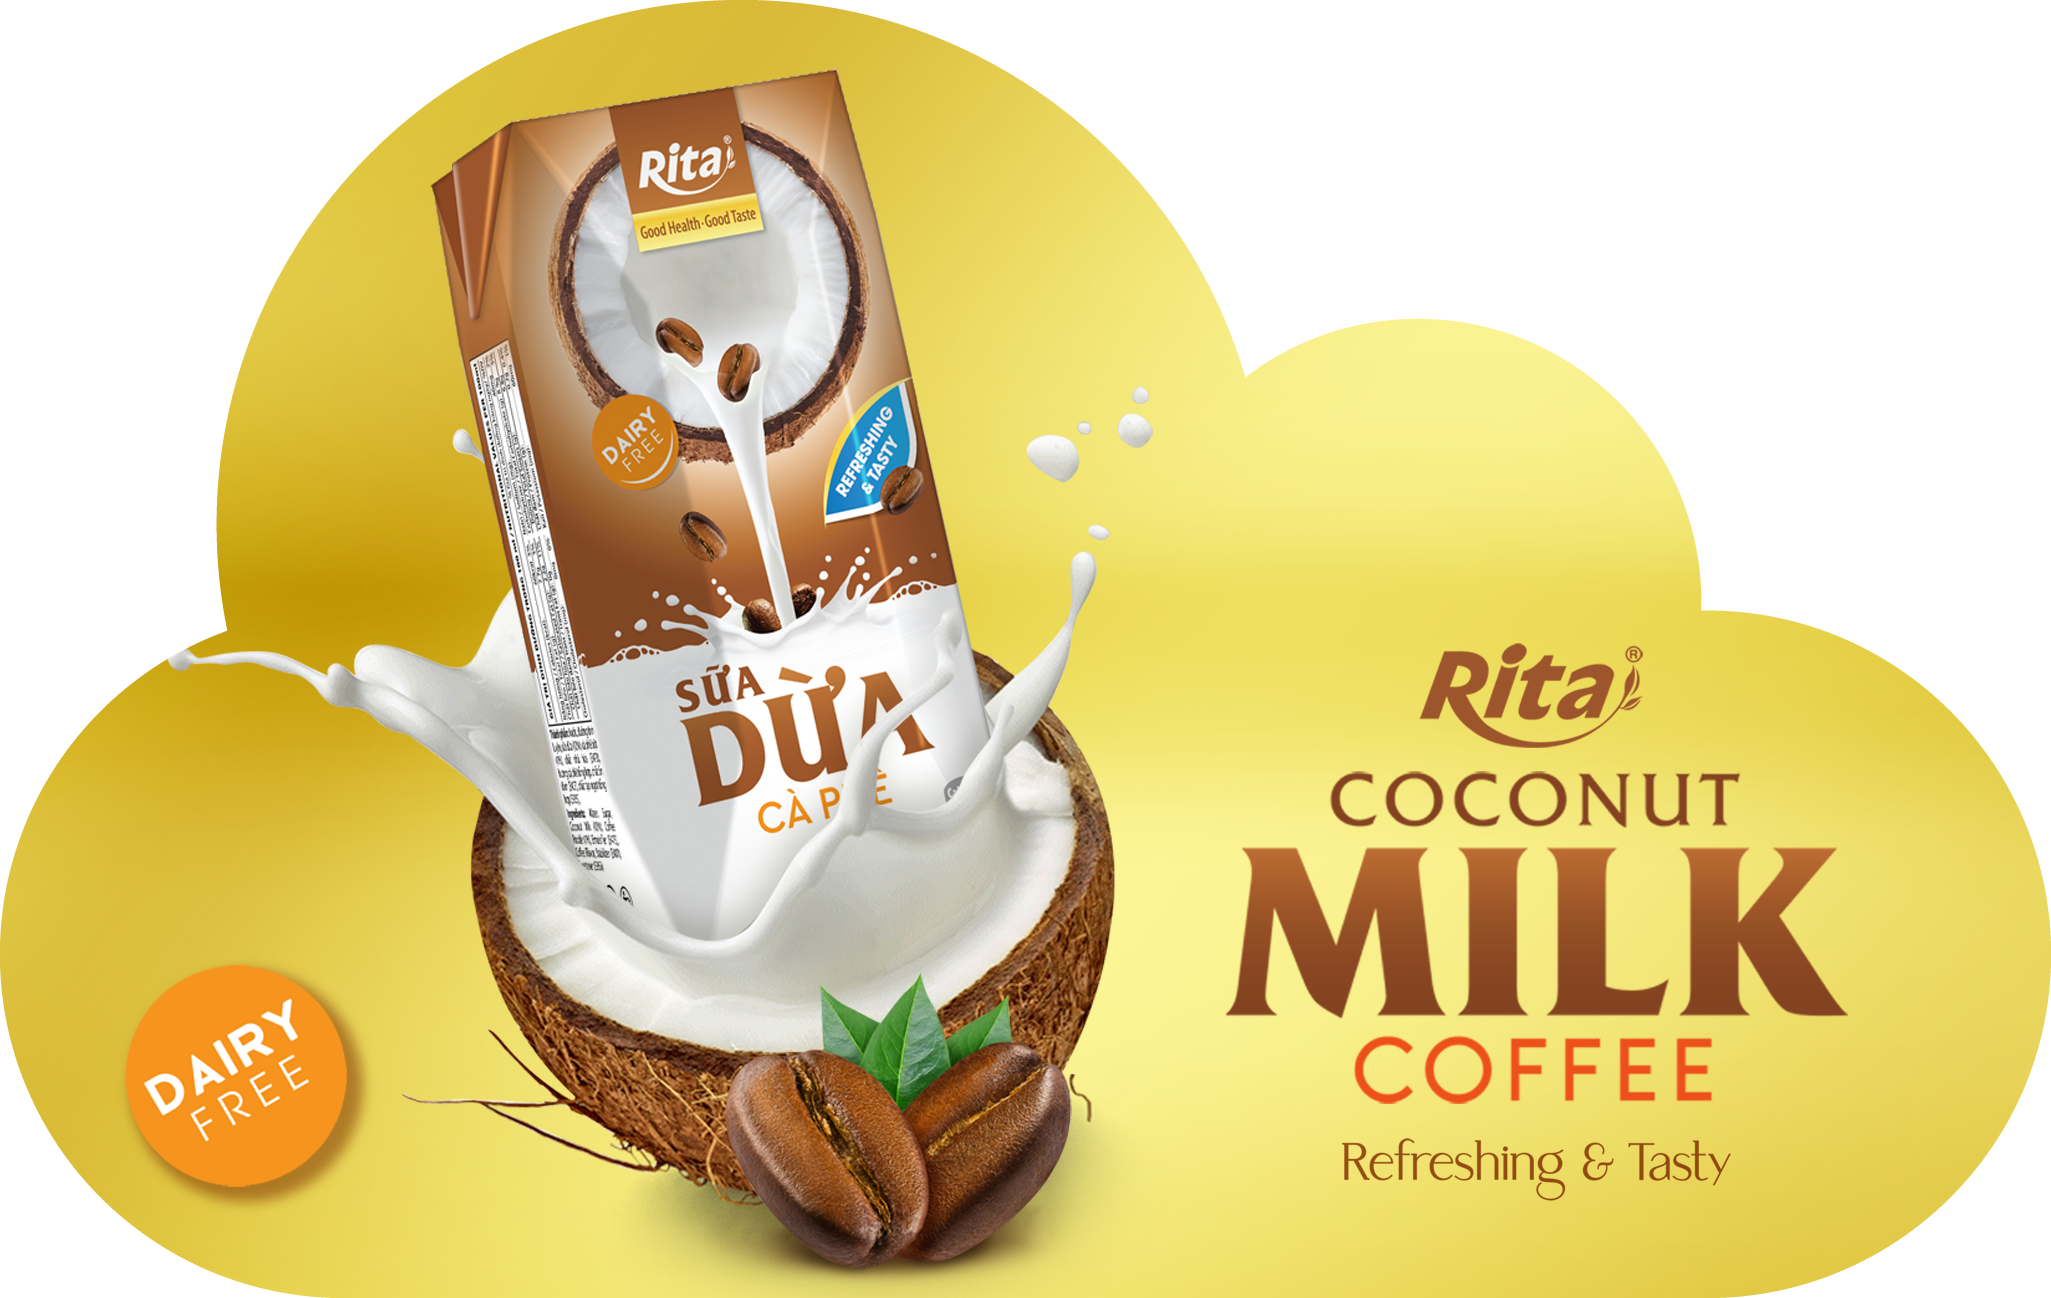 Rita Coconut Milk